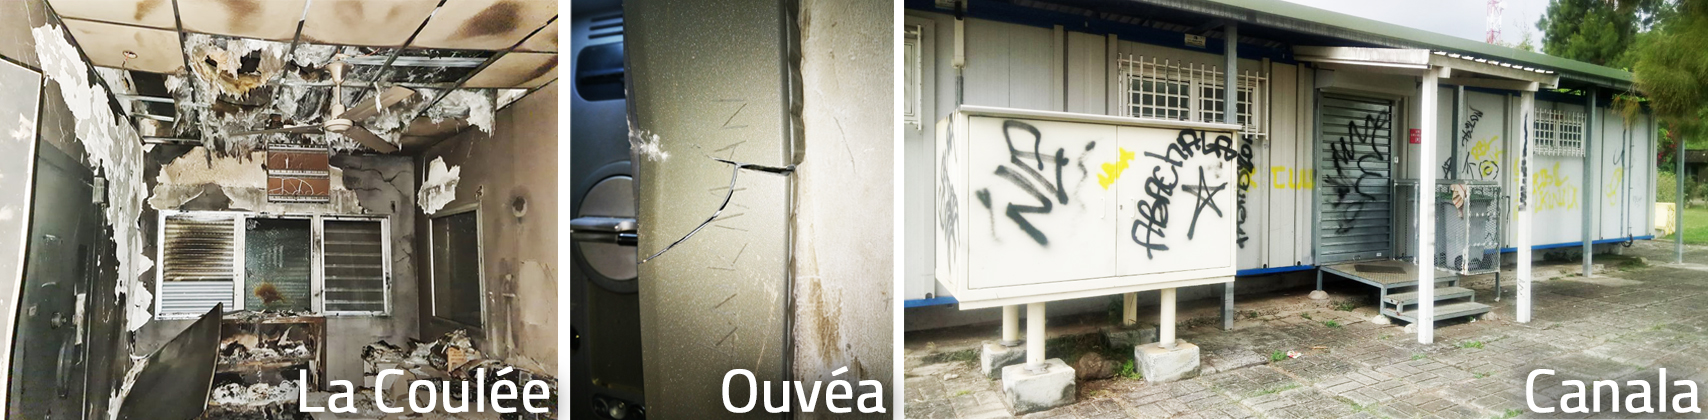 Plusieurs agences OPT vandalisées